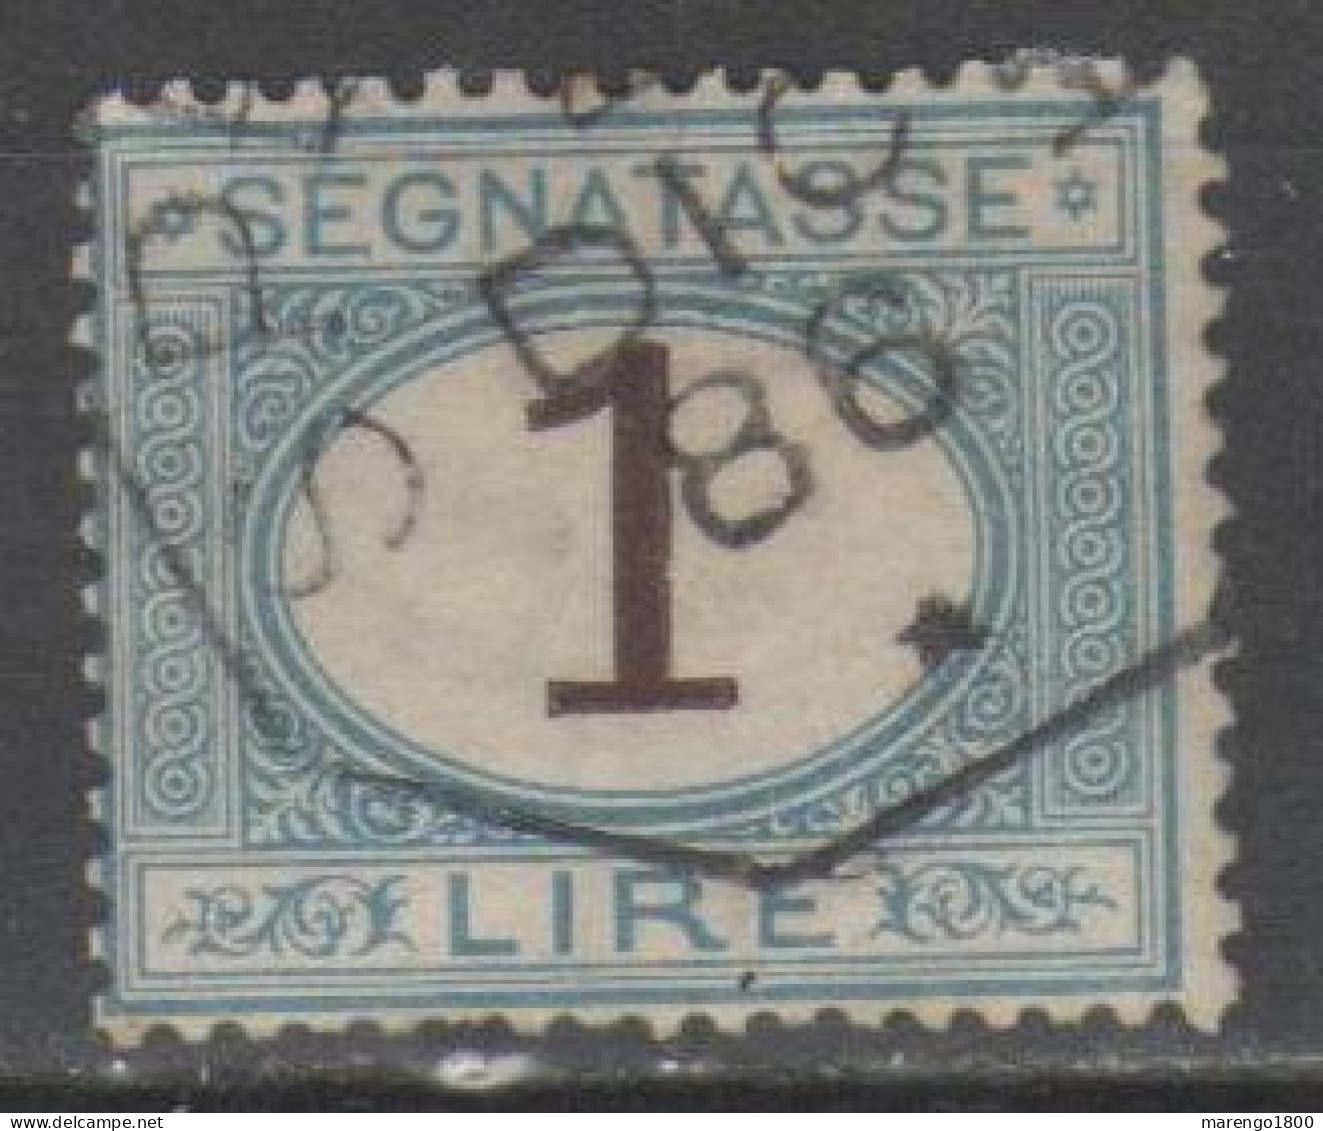 ITALIA 1870 - Segnatasse 1 L. - Postage Due